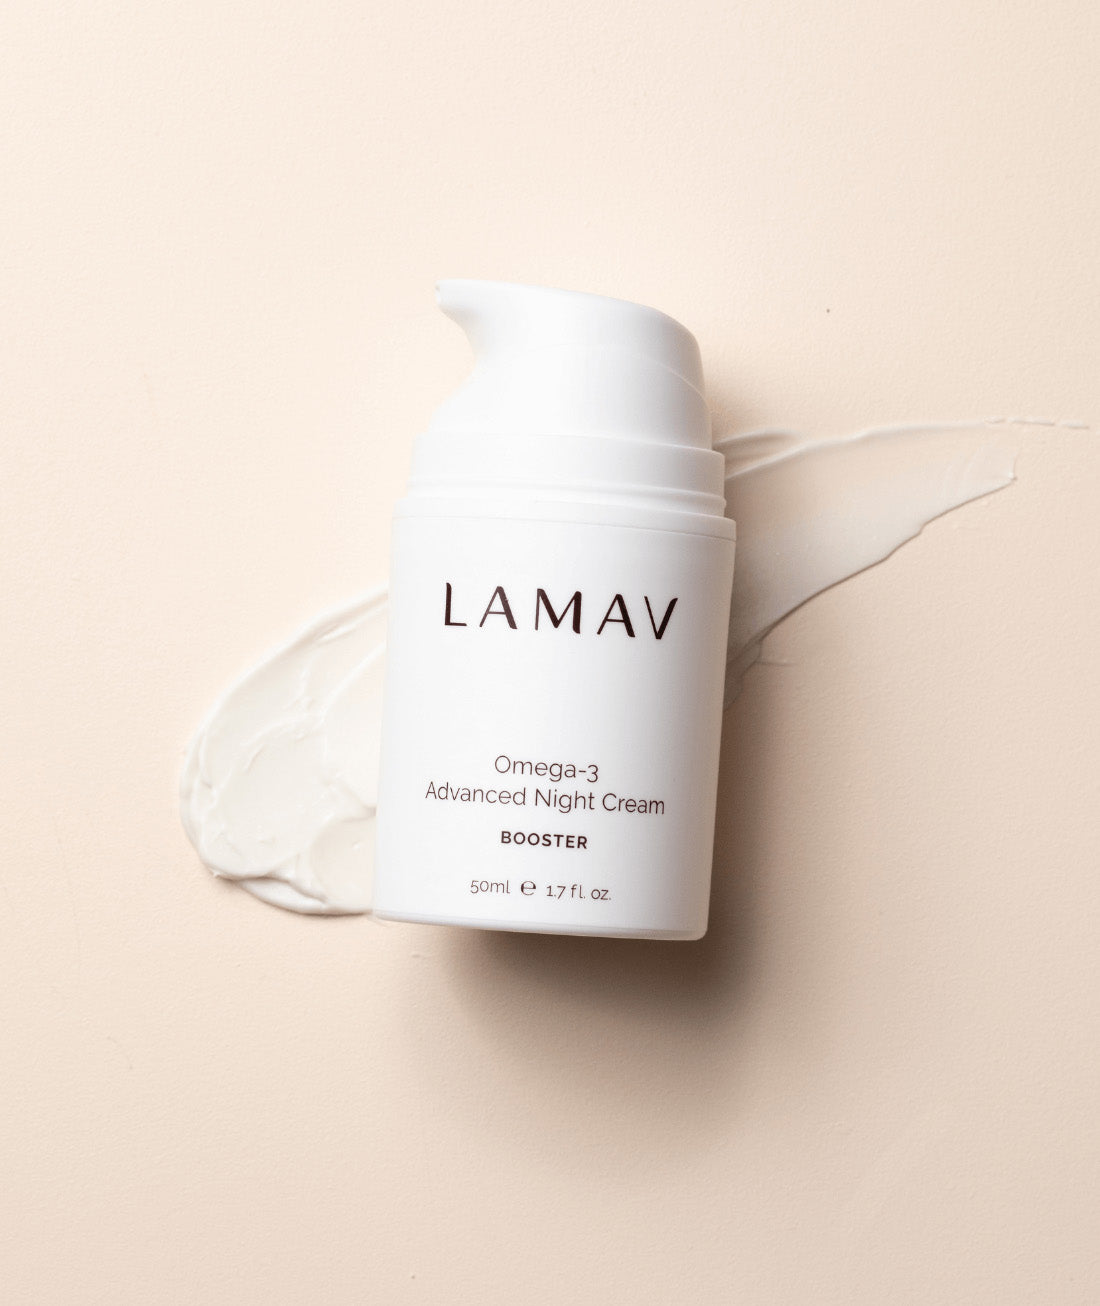 Lamav Omega-3 Advanced Night Repair Cream